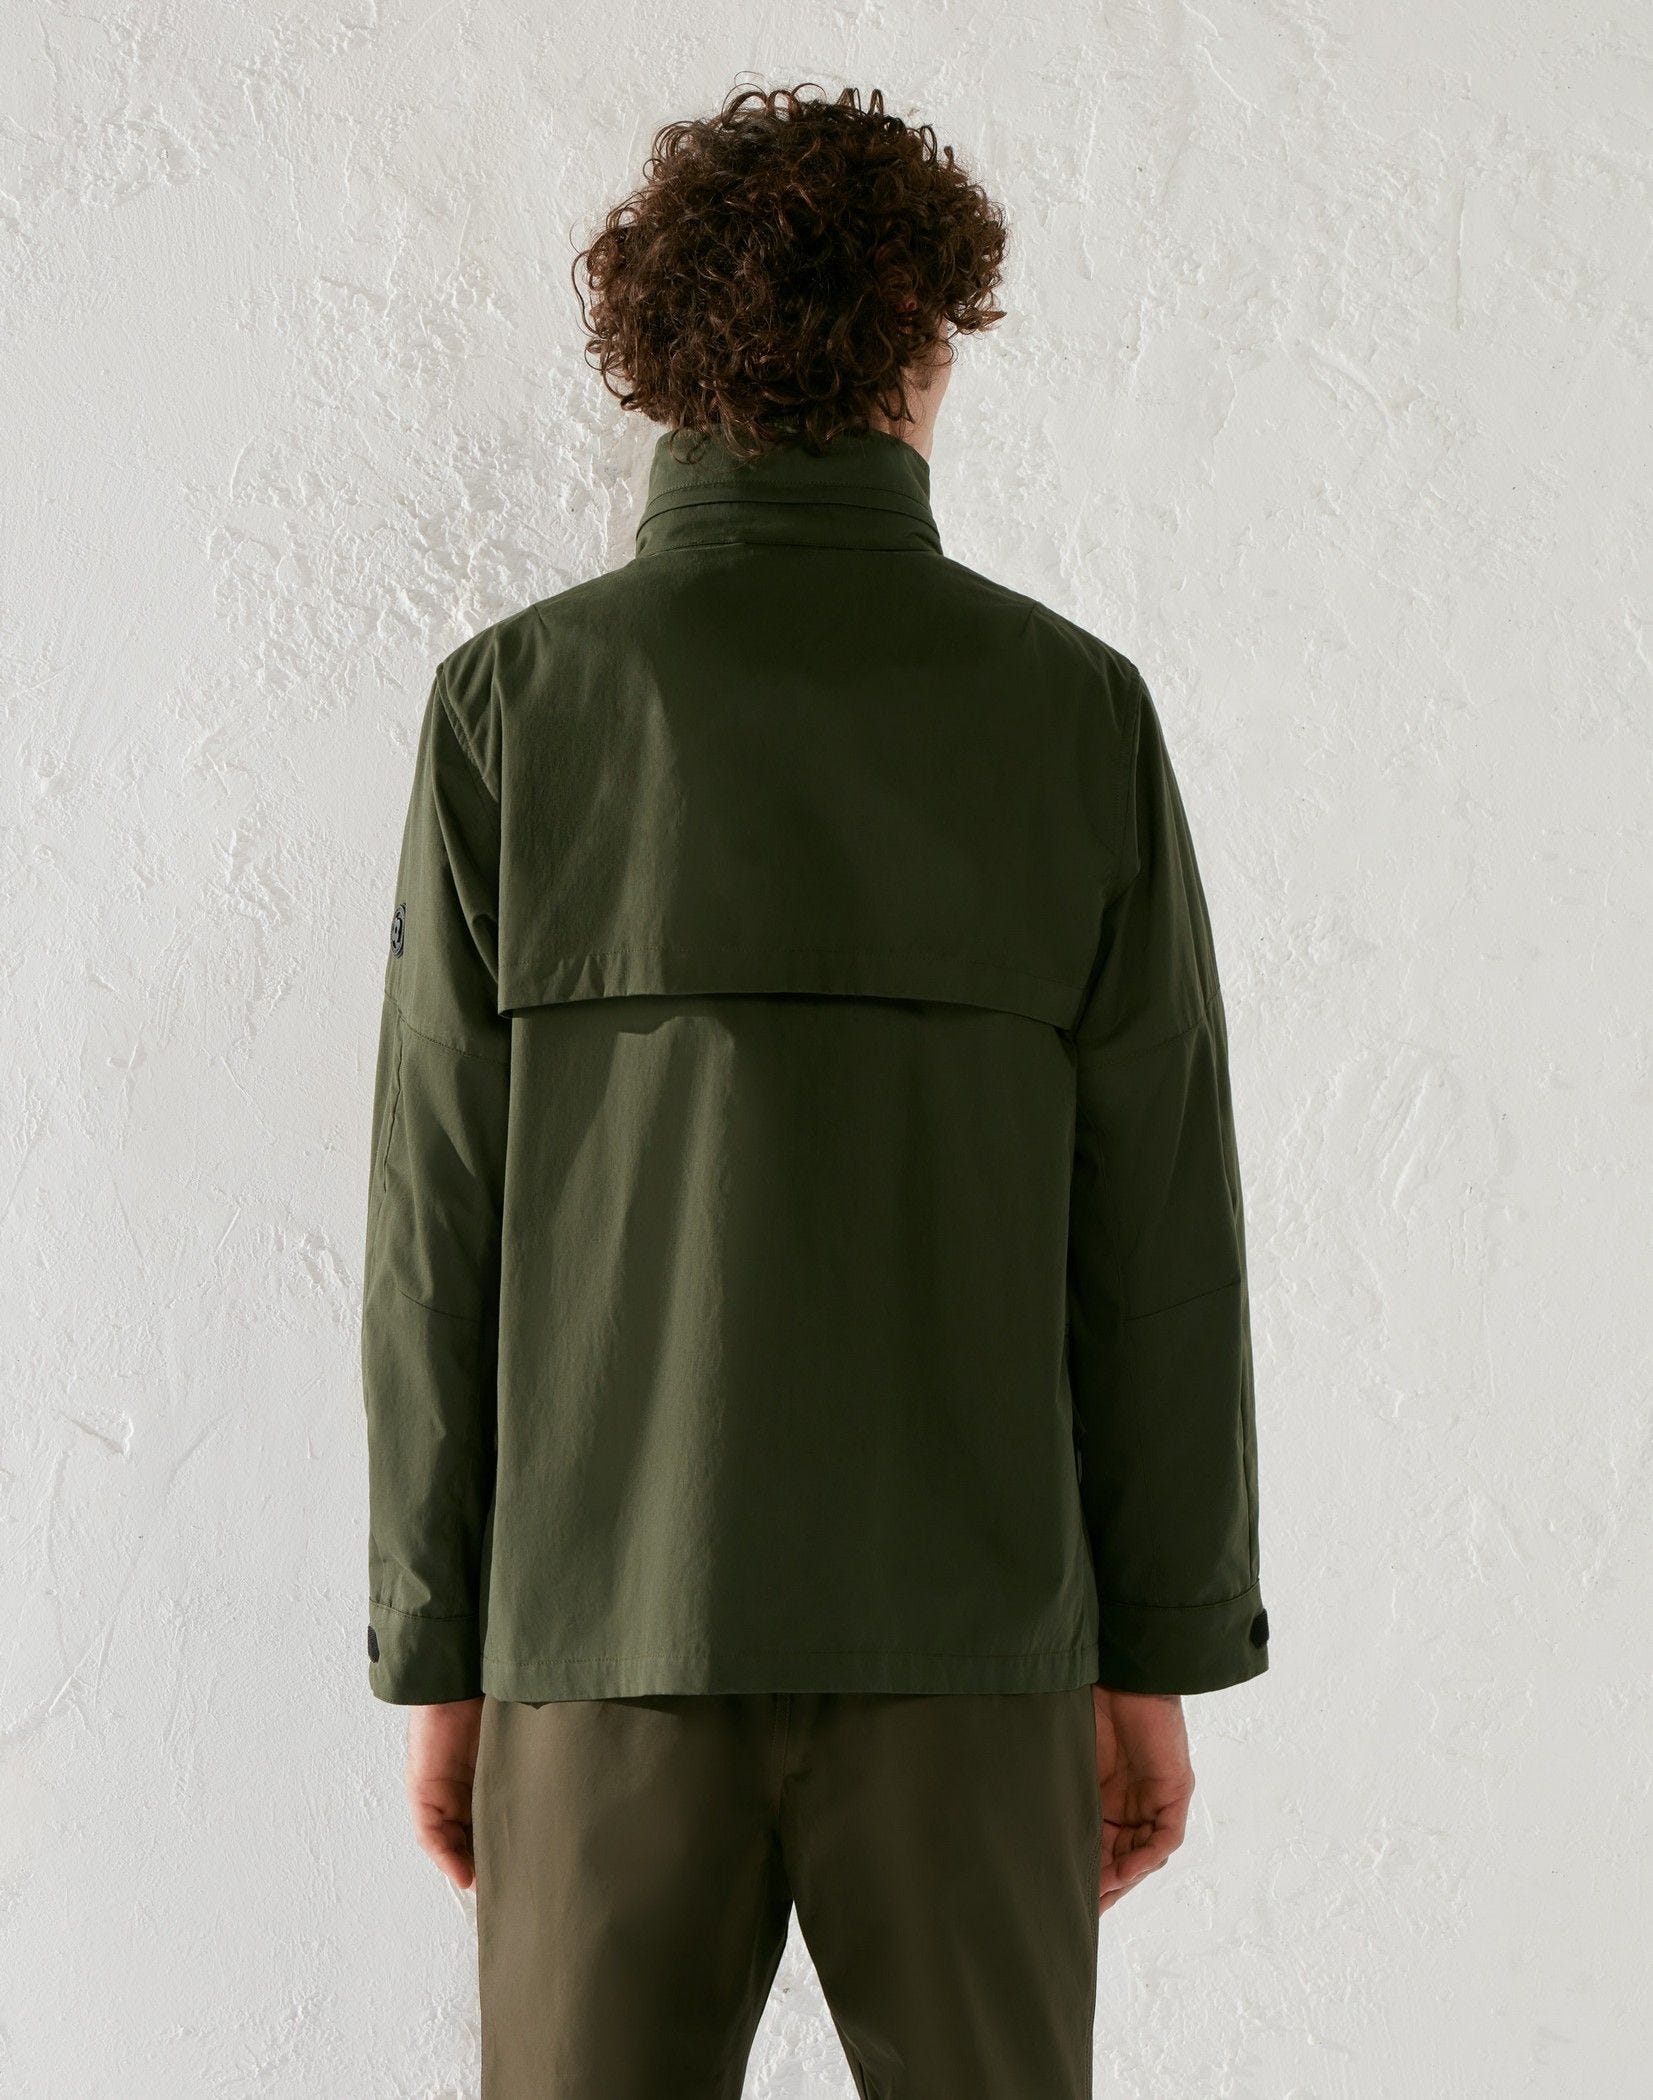 Cotton and nylon field jacket - Lardini by Yosuke Aizawa